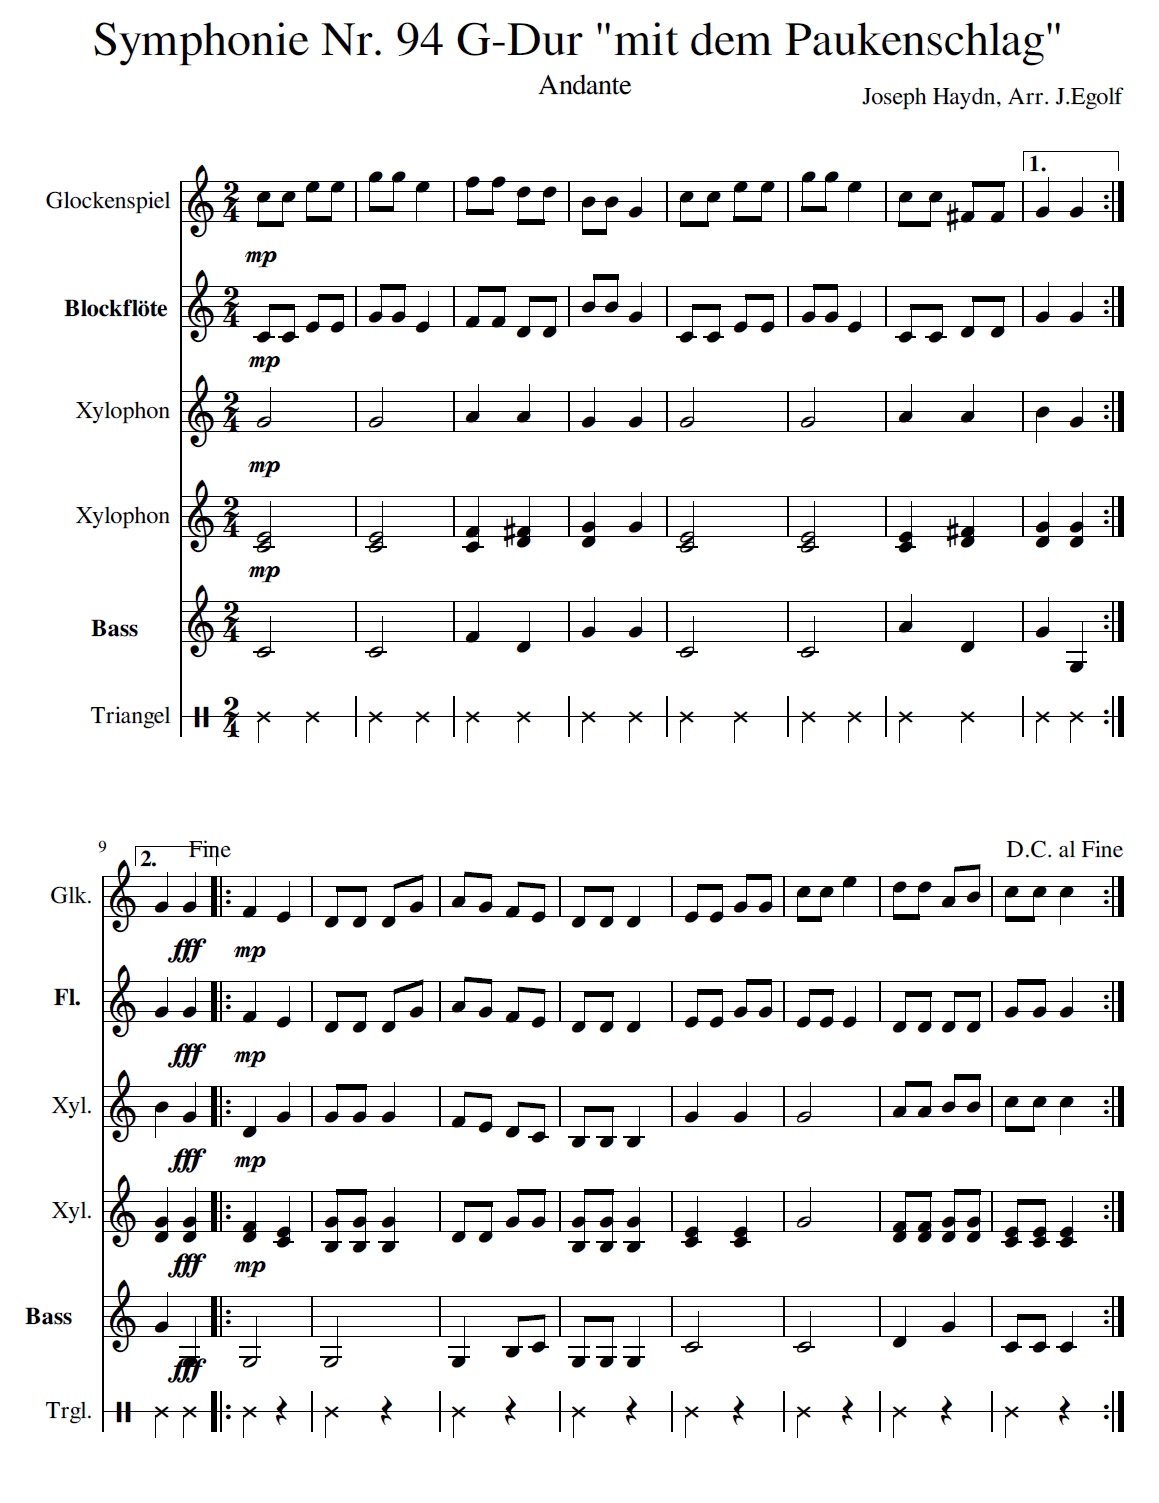 Spielsatz Paukenschlag Haydn